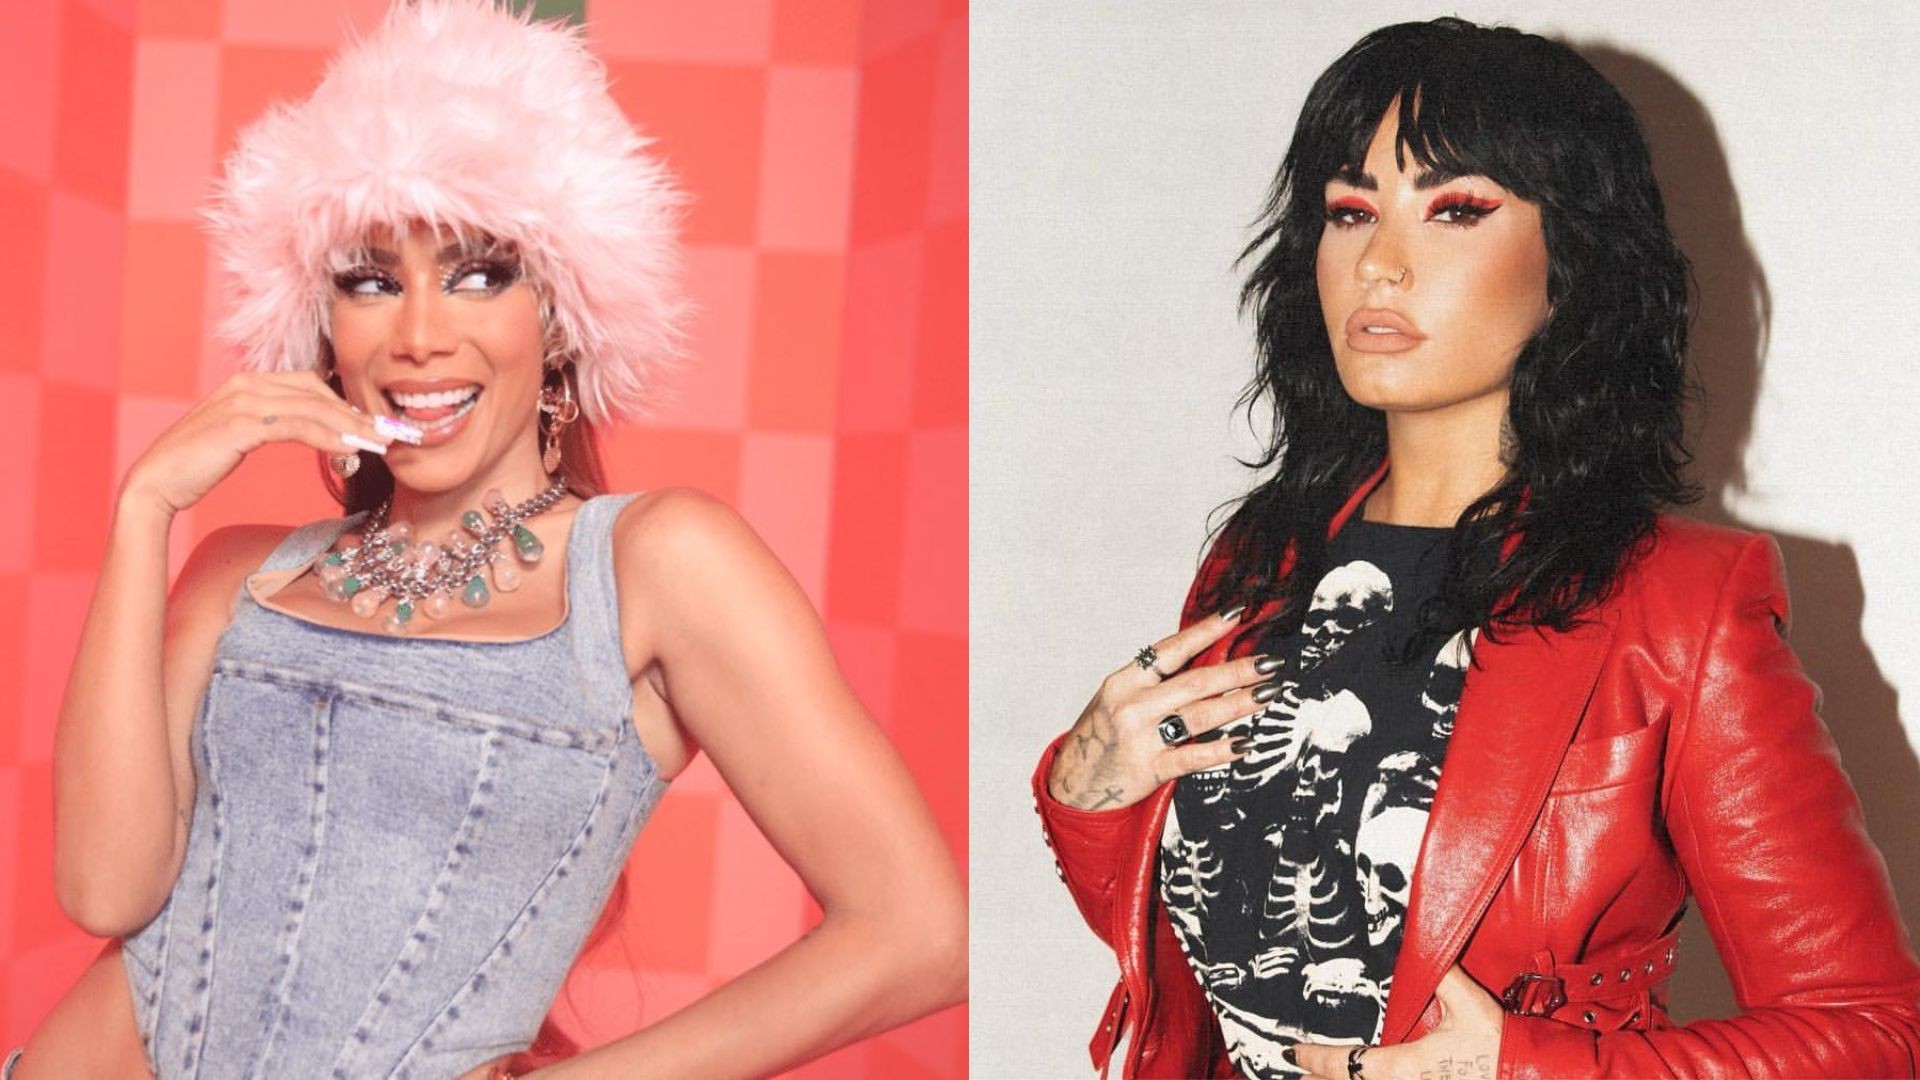 Anitta e Demi Lovato estão entre as artistas que lançaram músicas novas nesta semana. (Foto: Reprodução)